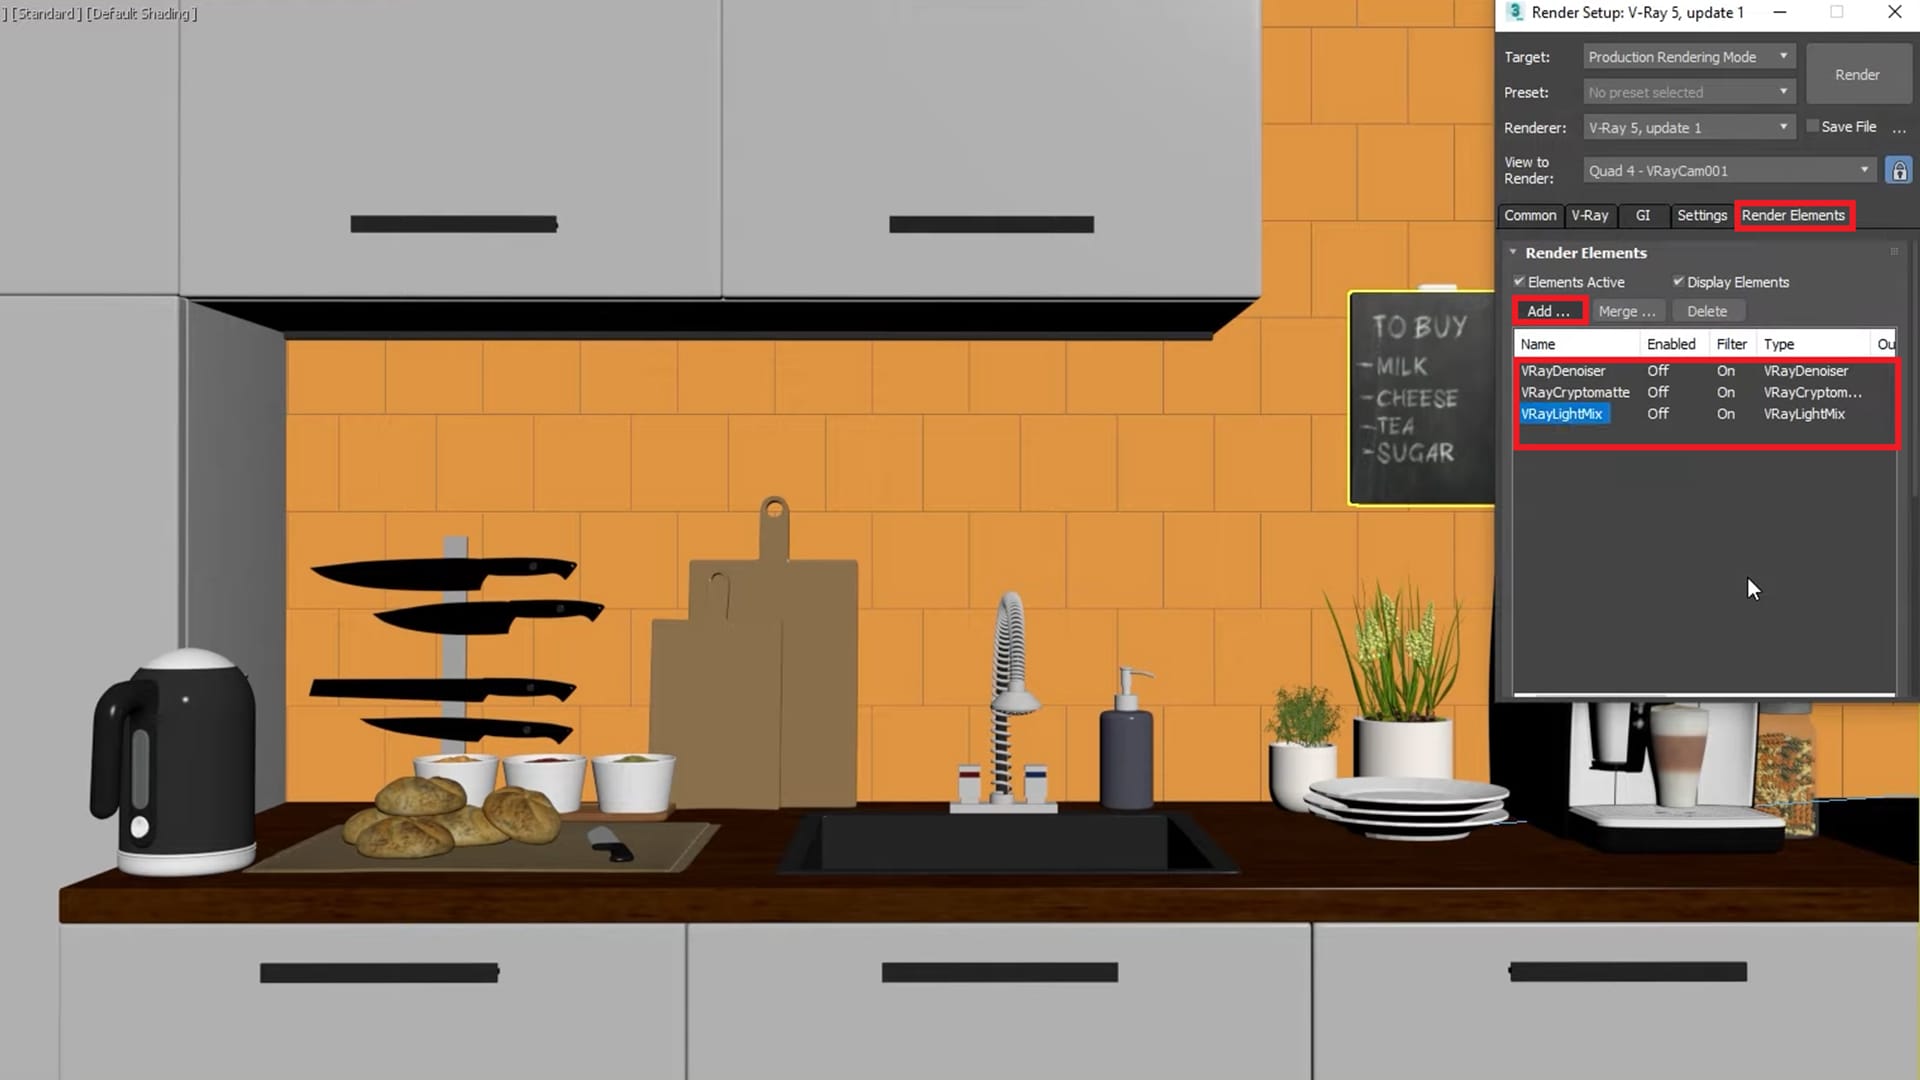 Nội thất nhà bếp là một trong những phần quan trọng của một căn nhà, đặc biệt là với những người yêu thích nấu ăn. Hãy xem hình minh họa và lấy cảm hứng cho việc thiết kế và trang trí nội thất nhà bếp trong căn nhà của bạn.